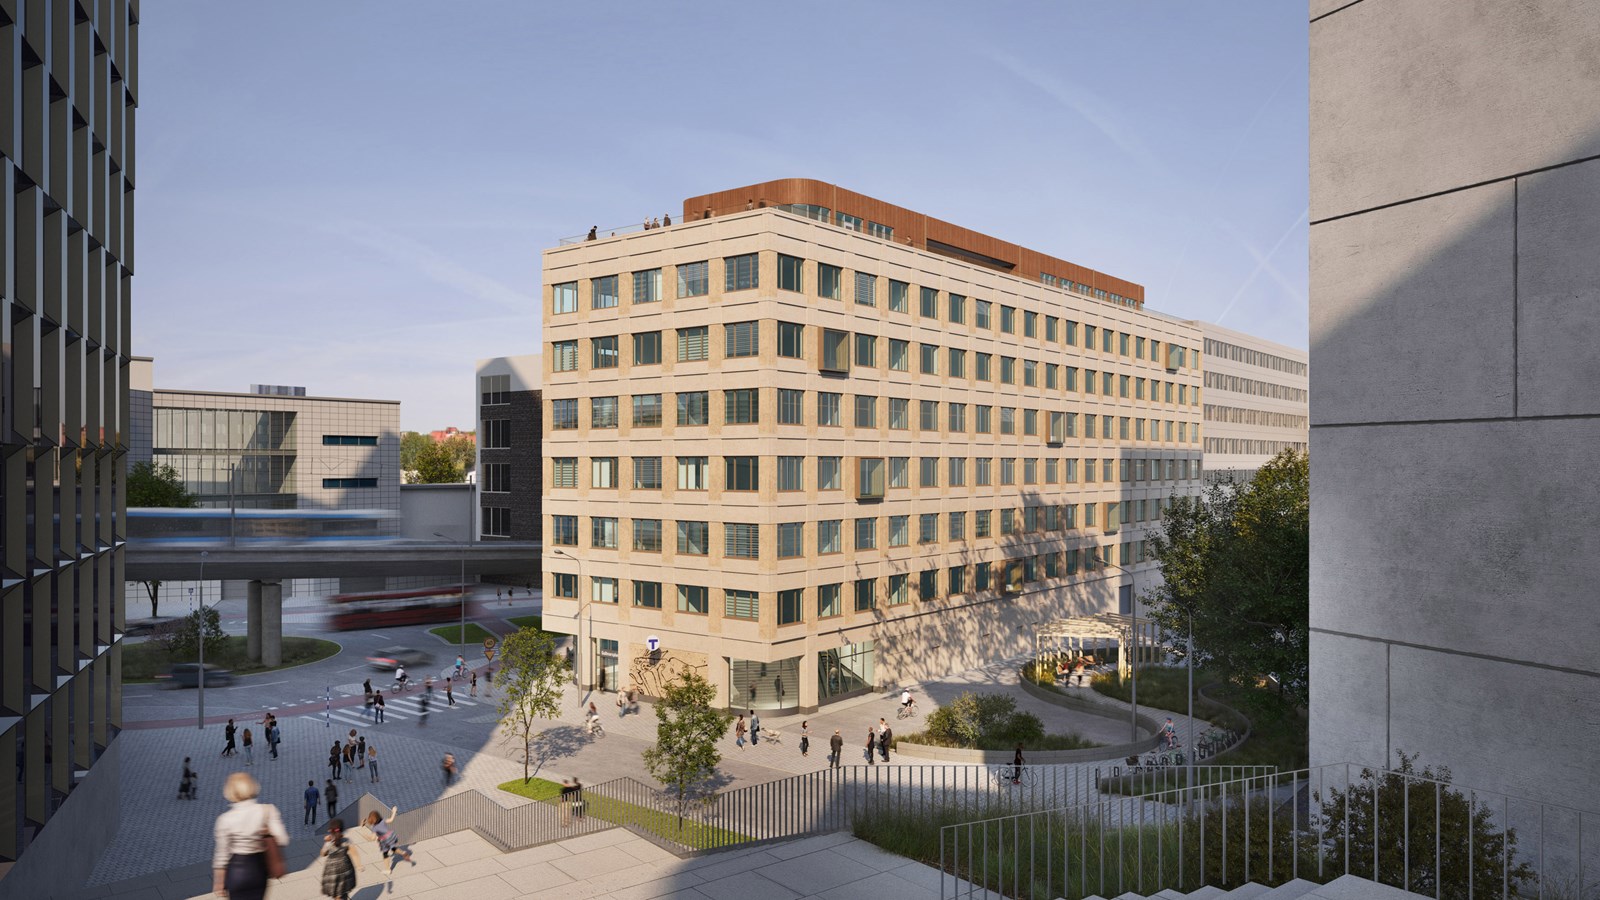 Skanska investerar cirka 390 miljoner kronor i första etappen av kontorsfastigheten Sthlm 02 i Hammarby Sjöstad, Stockholm. Den första fasen av den sju våningar höga byggnaden kommer att få en uthyrningsbar yta om cirka 7 600 kvadratmeter.